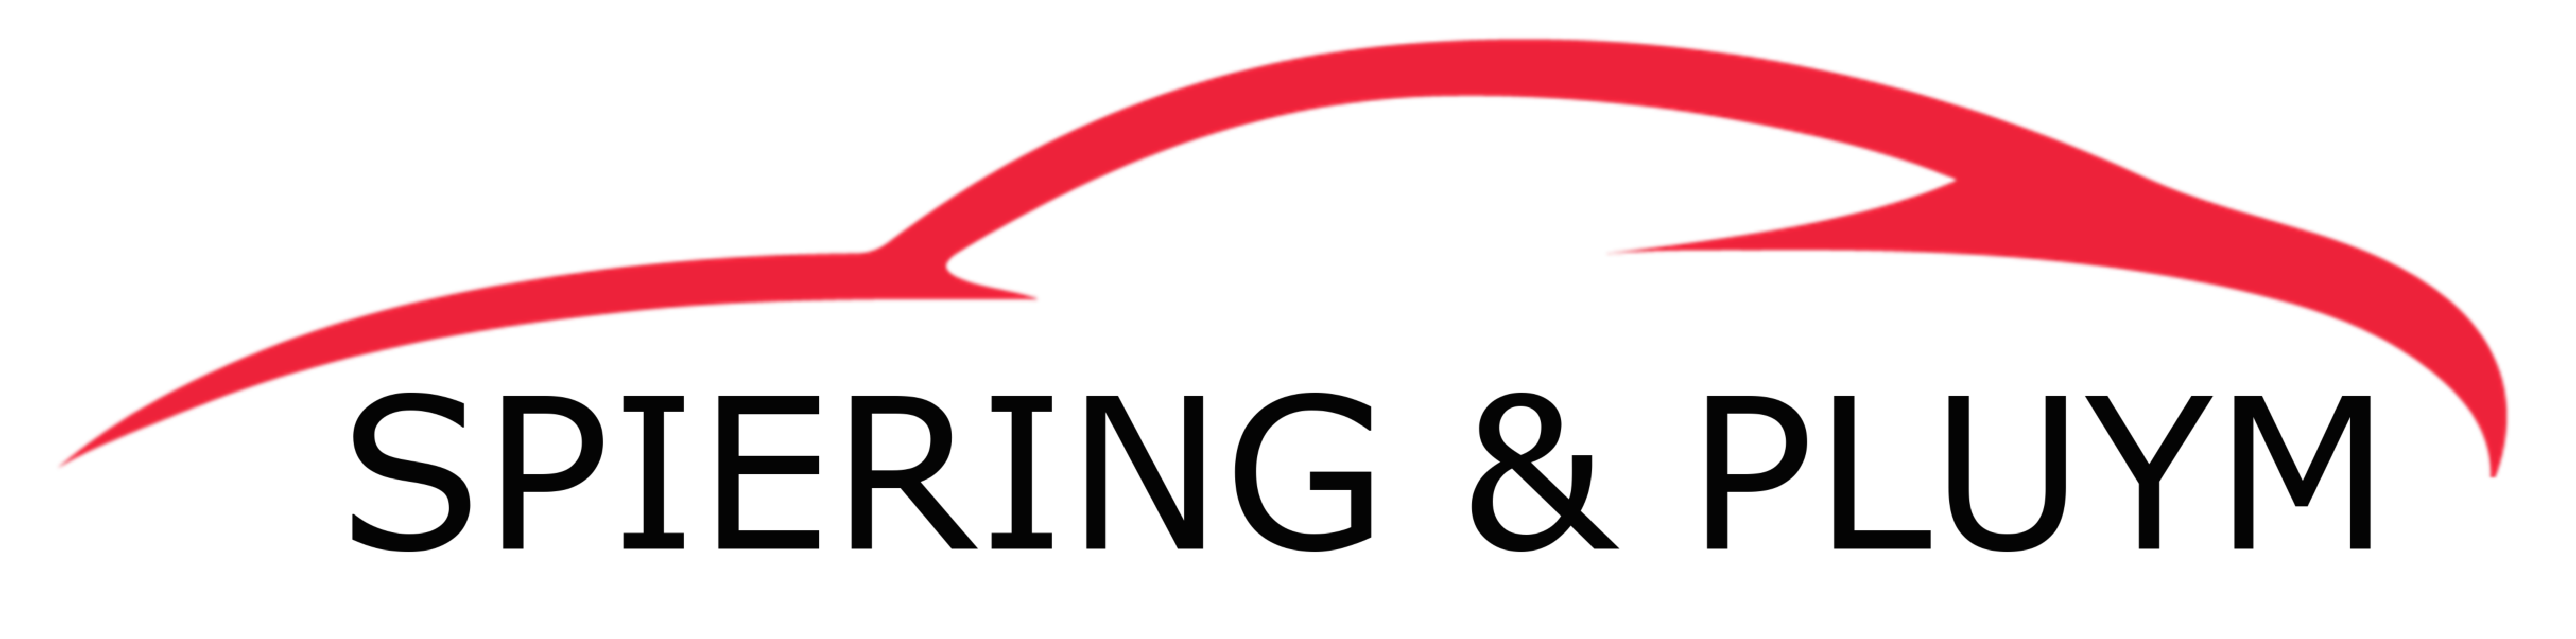 Logo Spiering-Pluym zonder BV